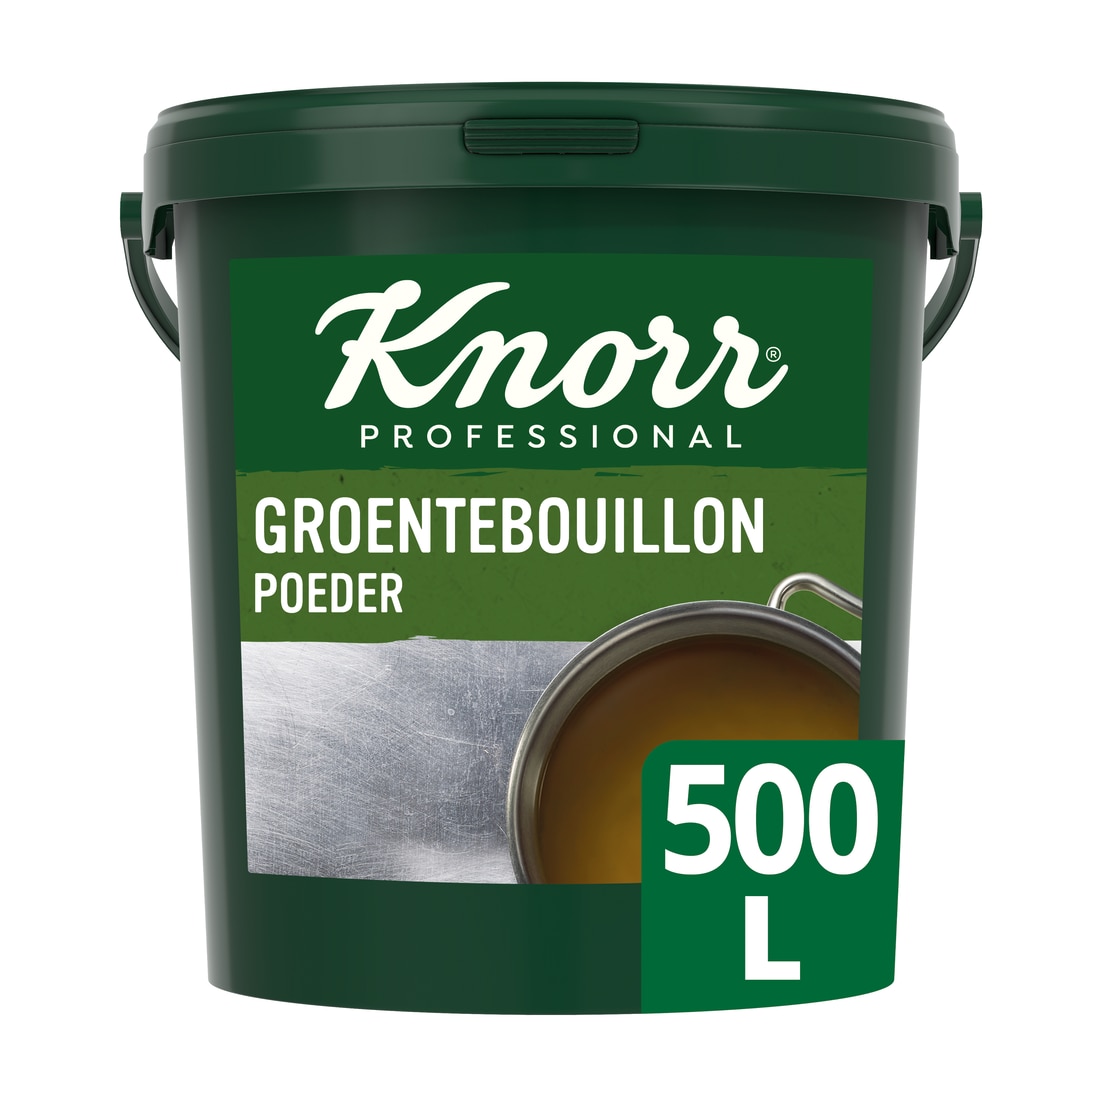 Knorr Groentebouillon Authentiek Poeder opbrengst 500L - 